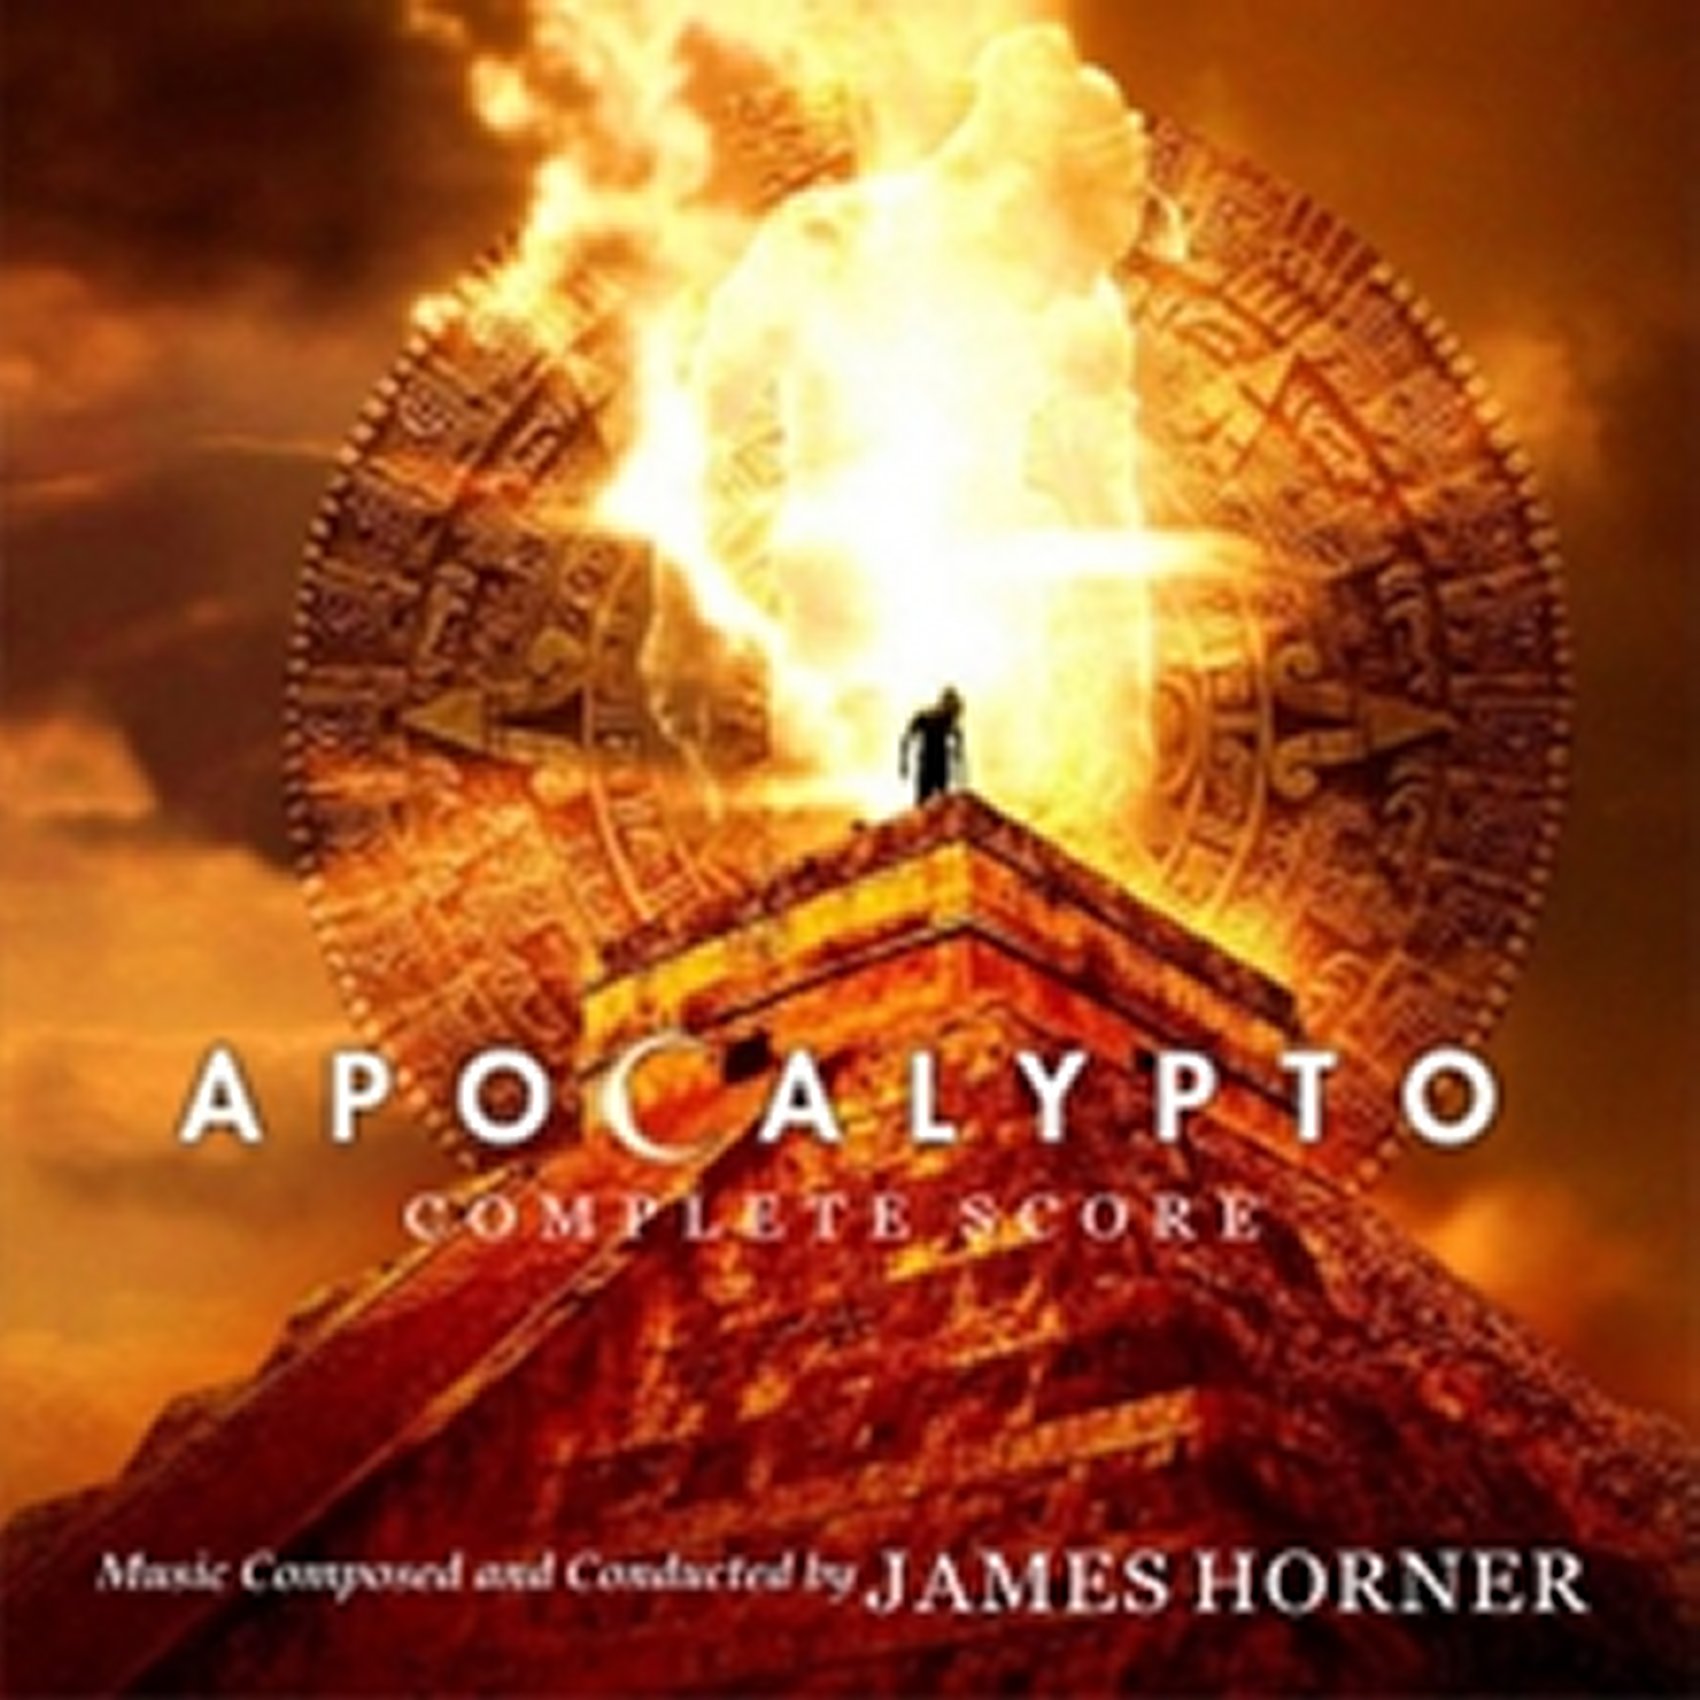 Apocalypto Complete Score